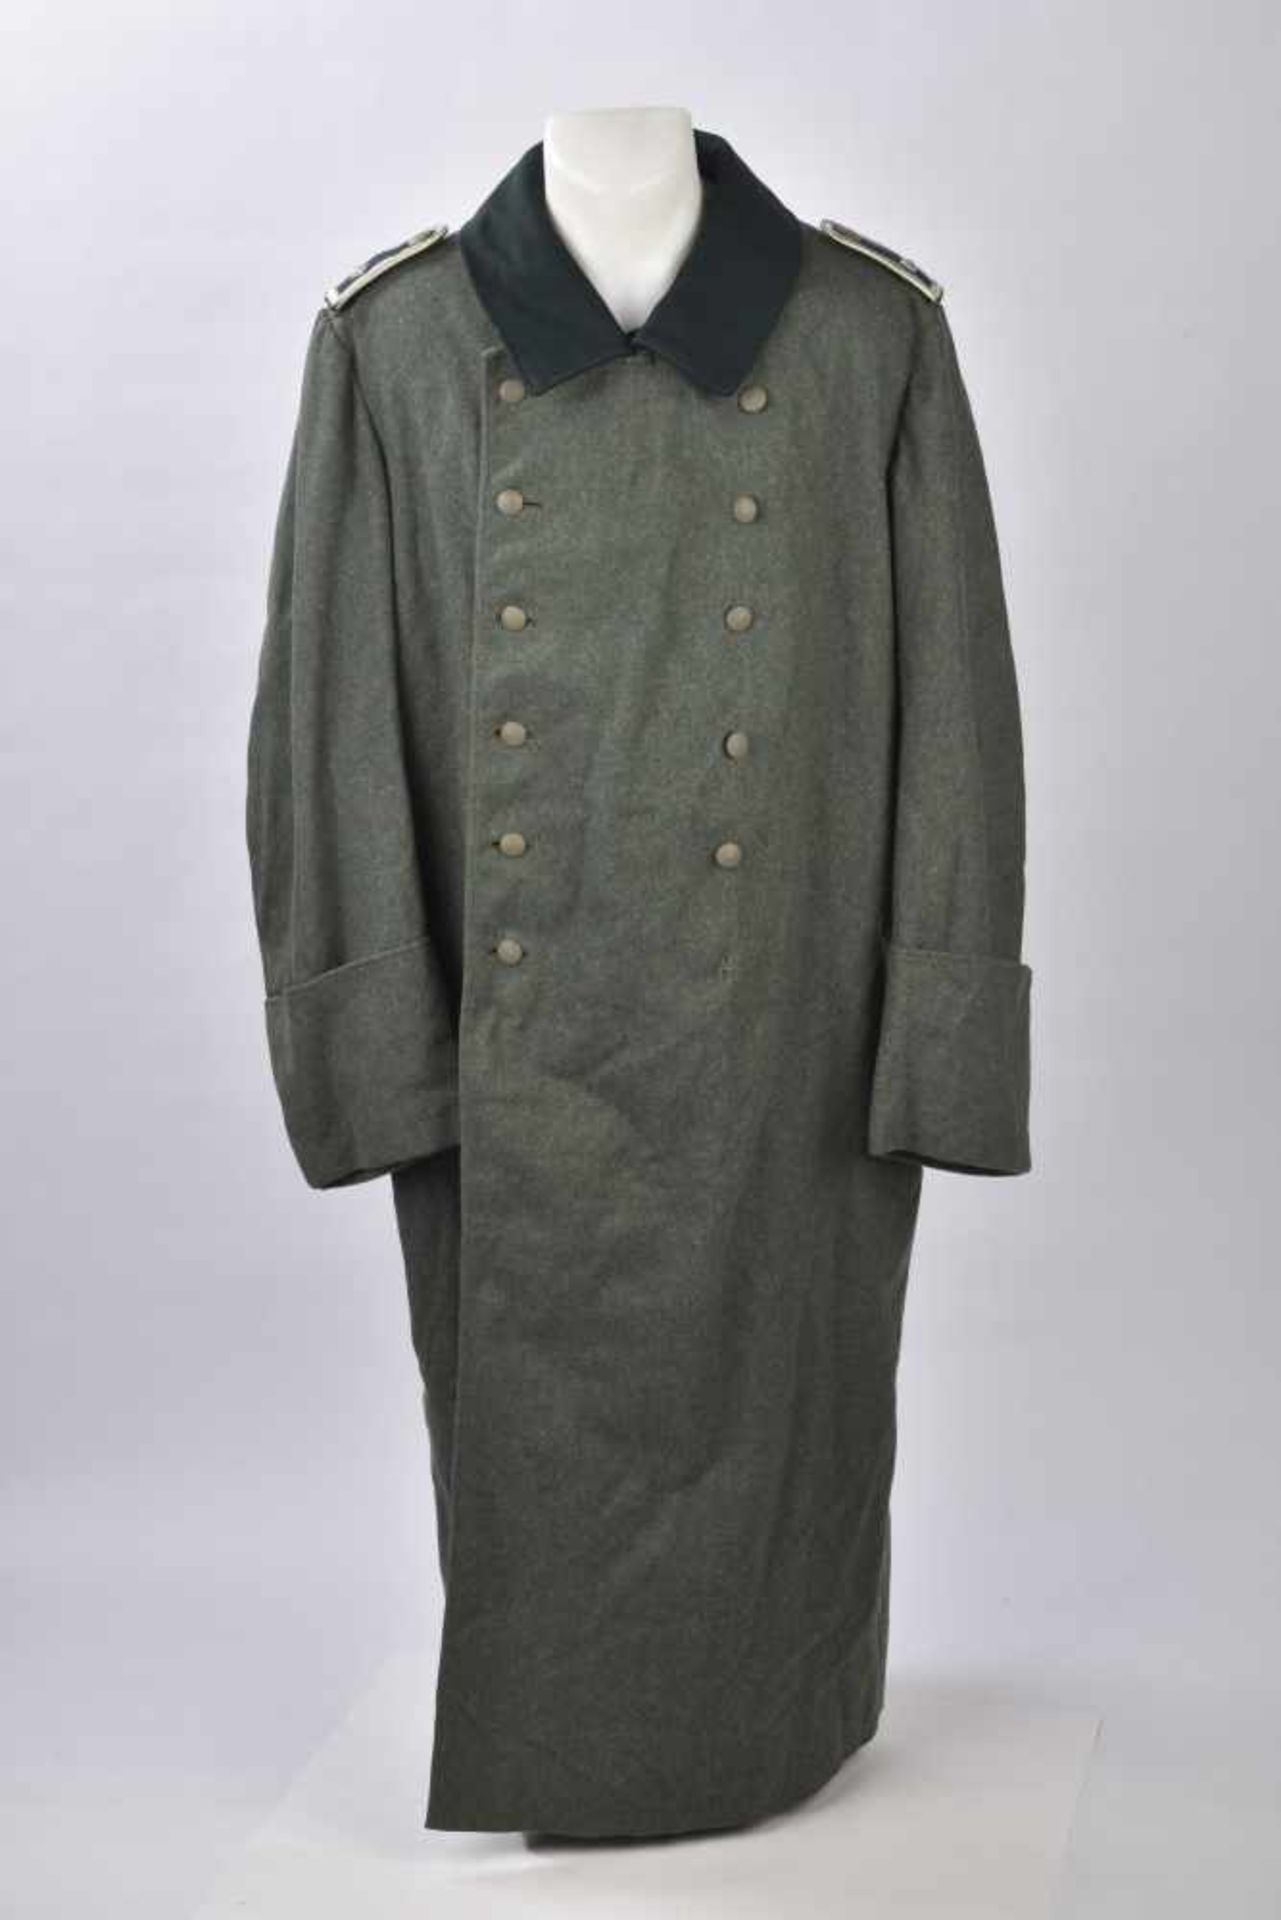 Manteau de Feldwebel en drap Feldgrau, la majorité des boutons sont présents, col vert canard,